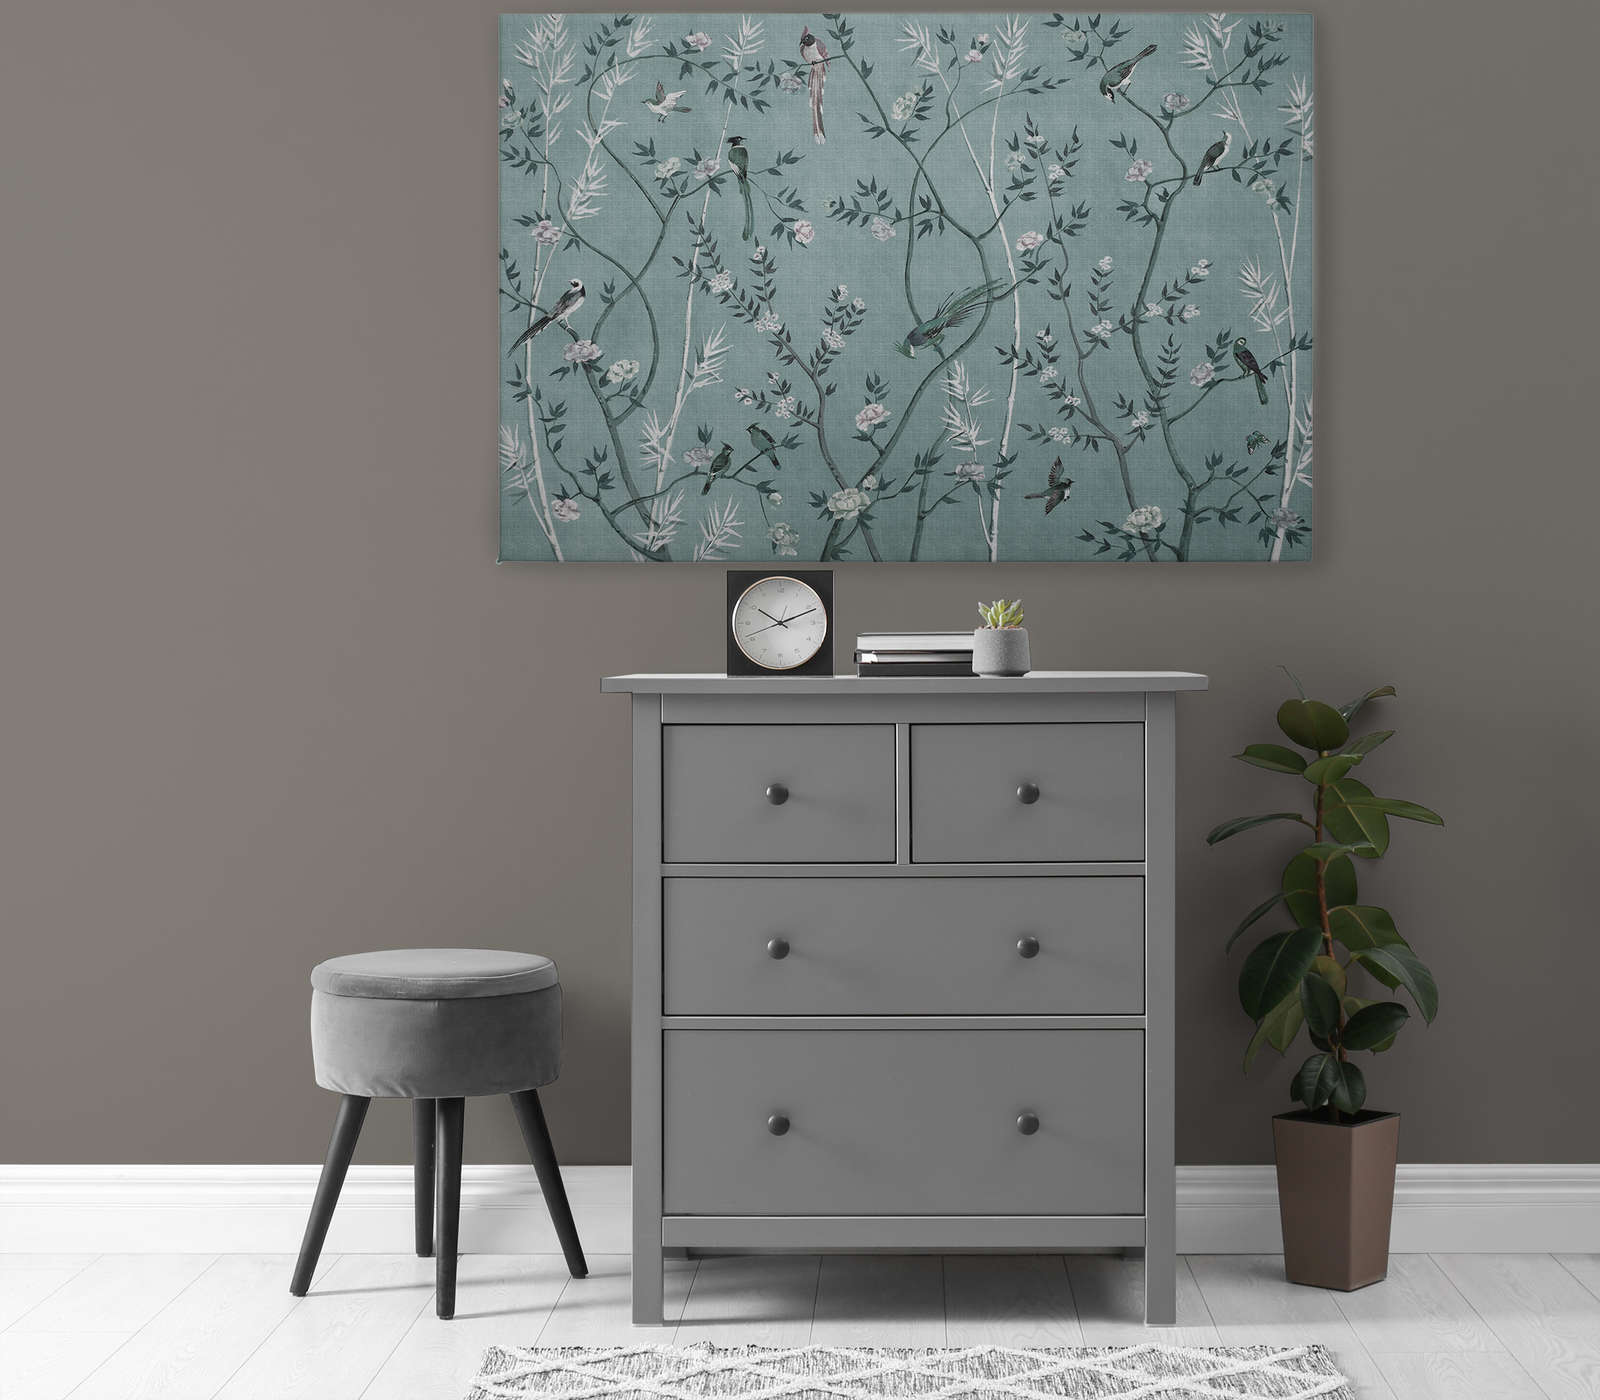             Tea Room 1 - Tableau toile Oiseaux & Fleurs Style en pétrole & blanc - 1,20 m x 0,80 m
        